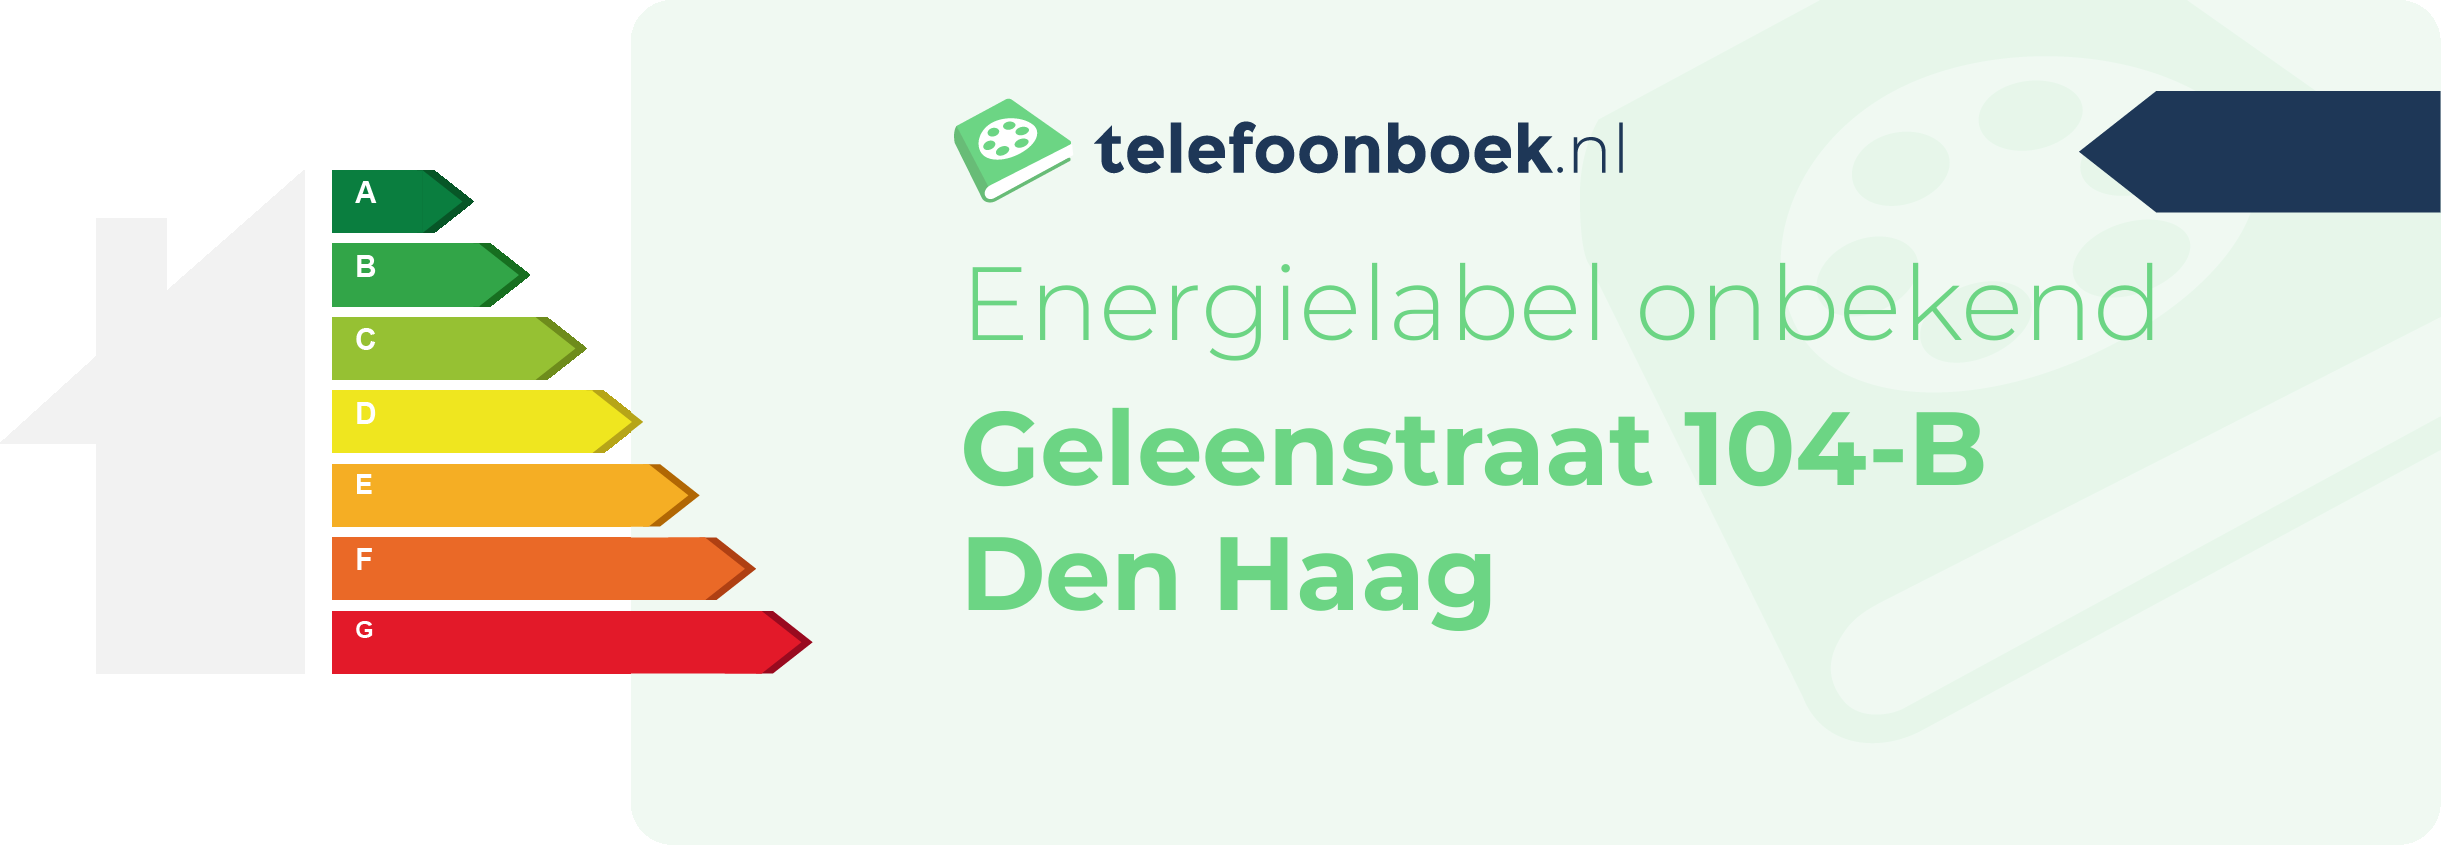 Energielabel Geleenstraat 104-B Den Haag